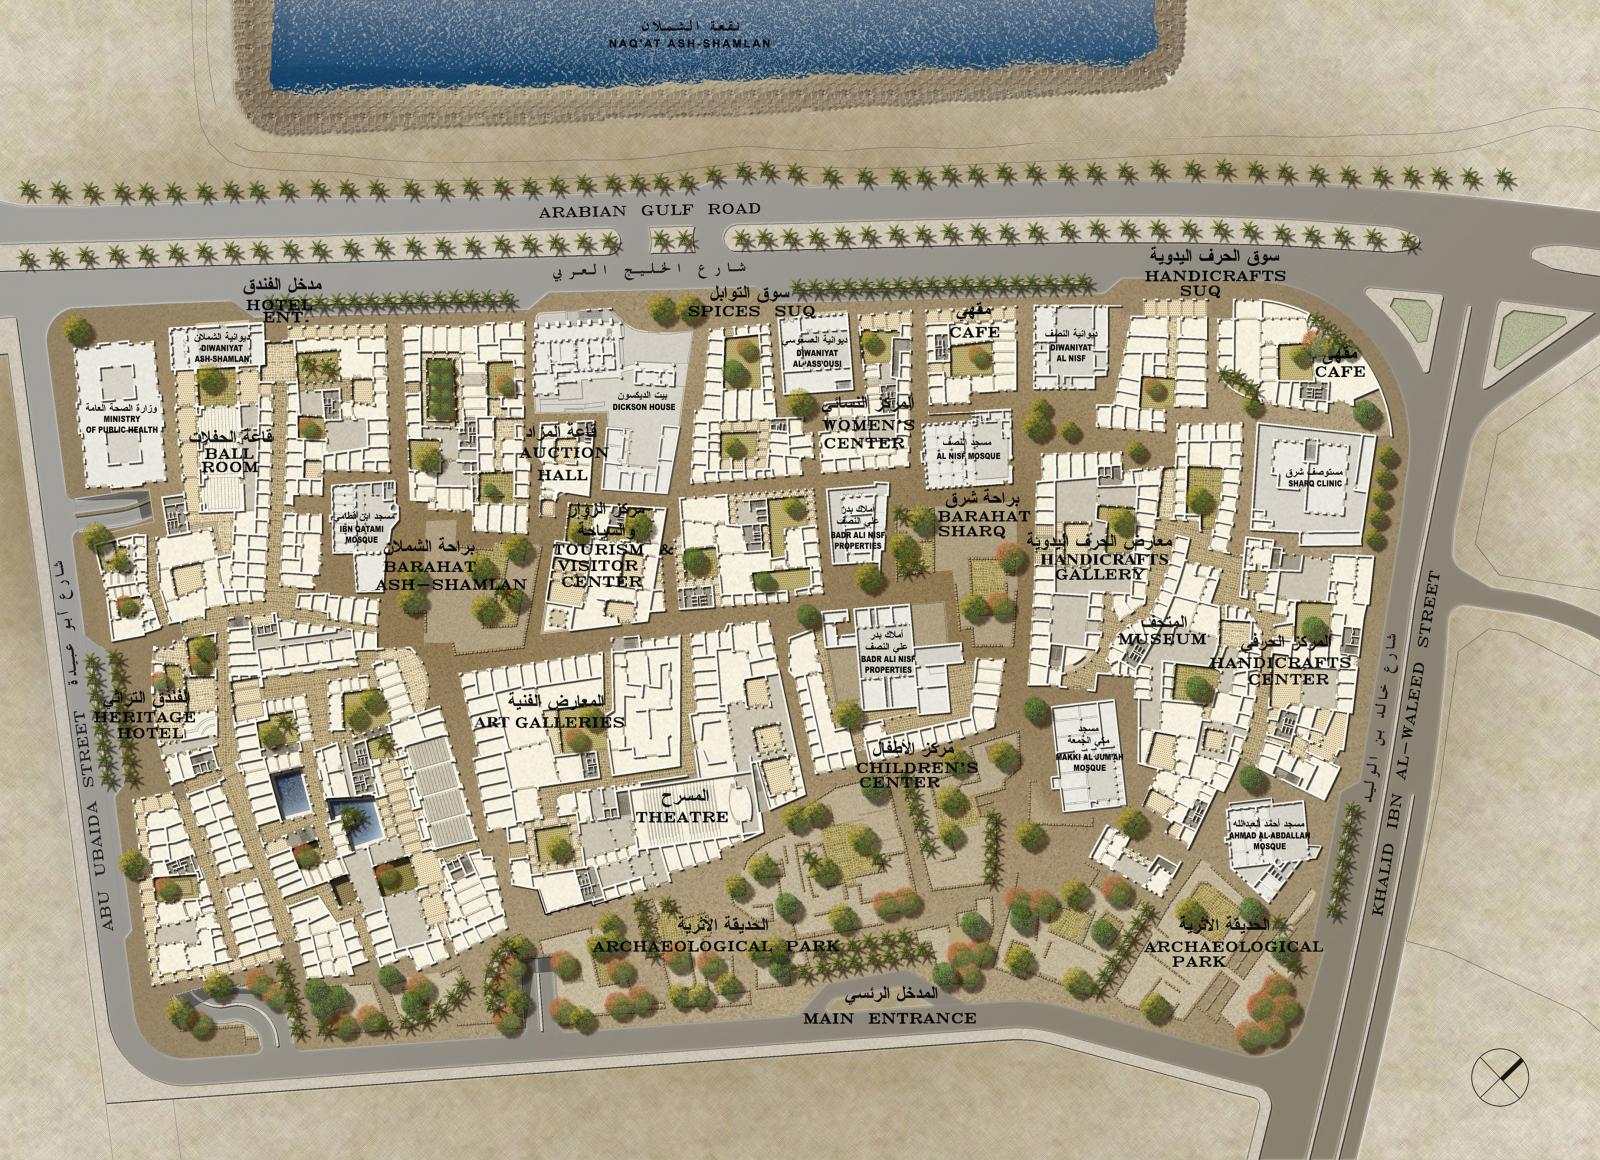 Kuwait Heritage Village - Master Planning